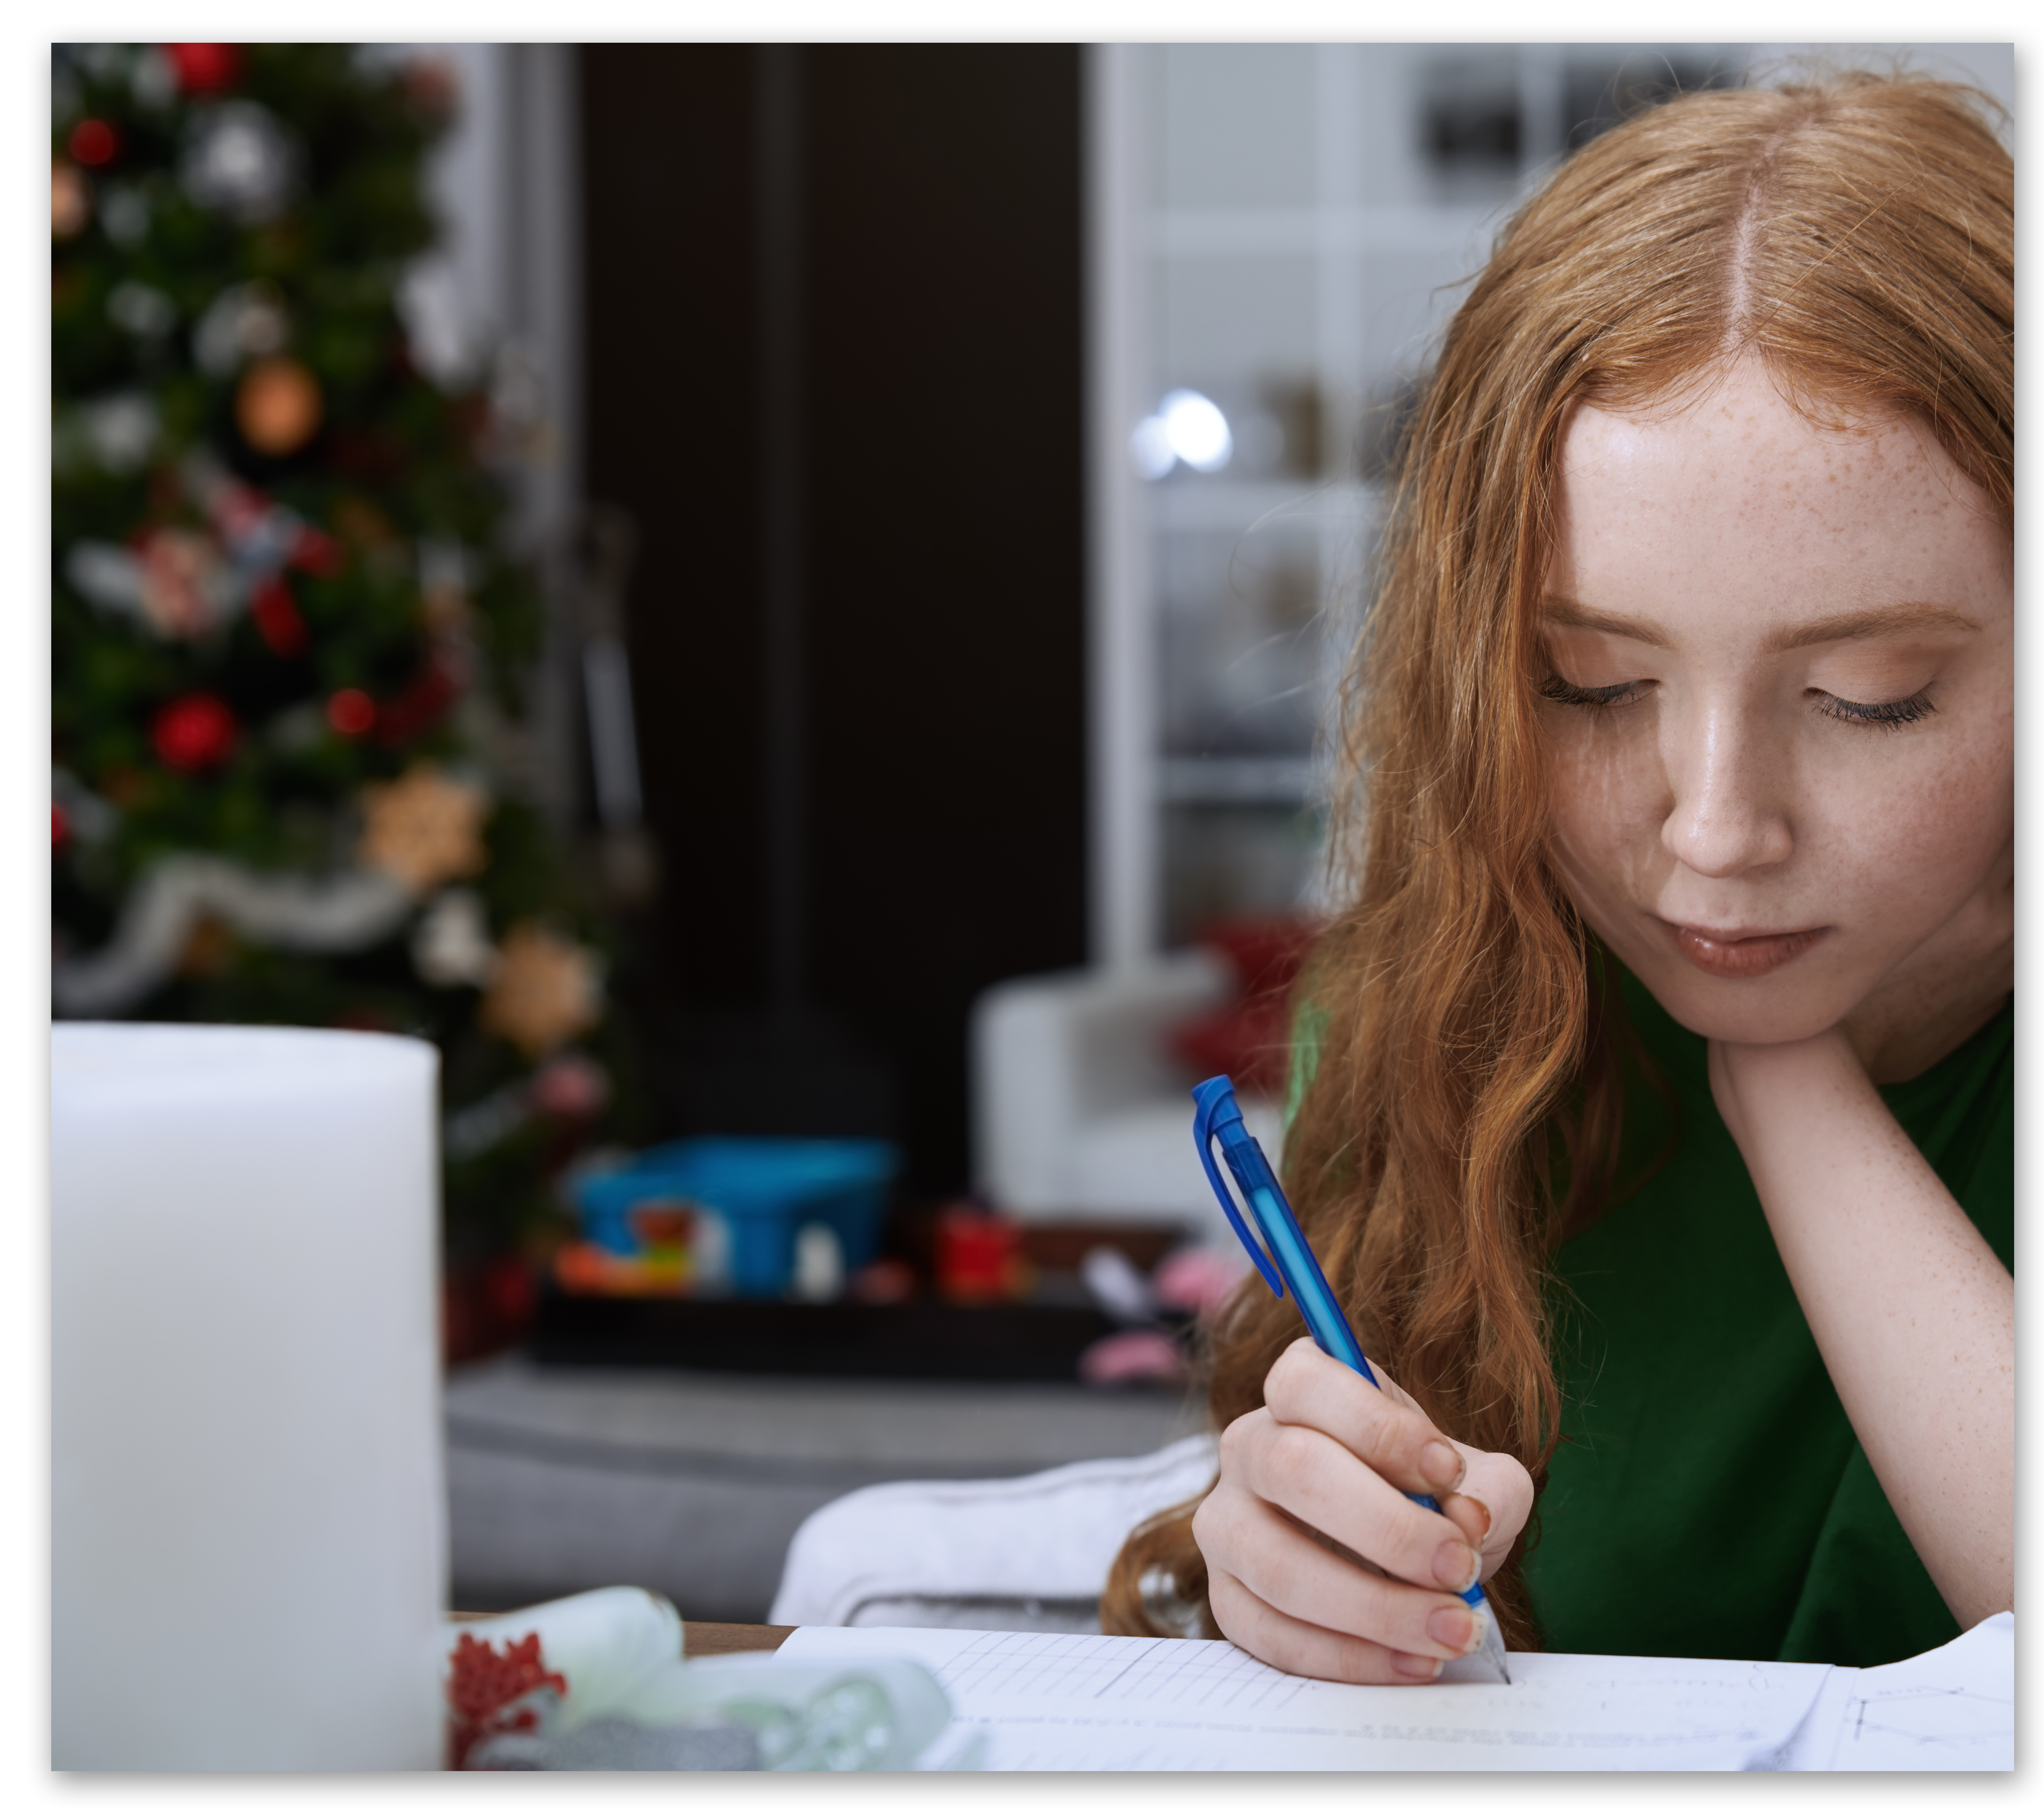 Red-headed girl doing homework on laptop in her home